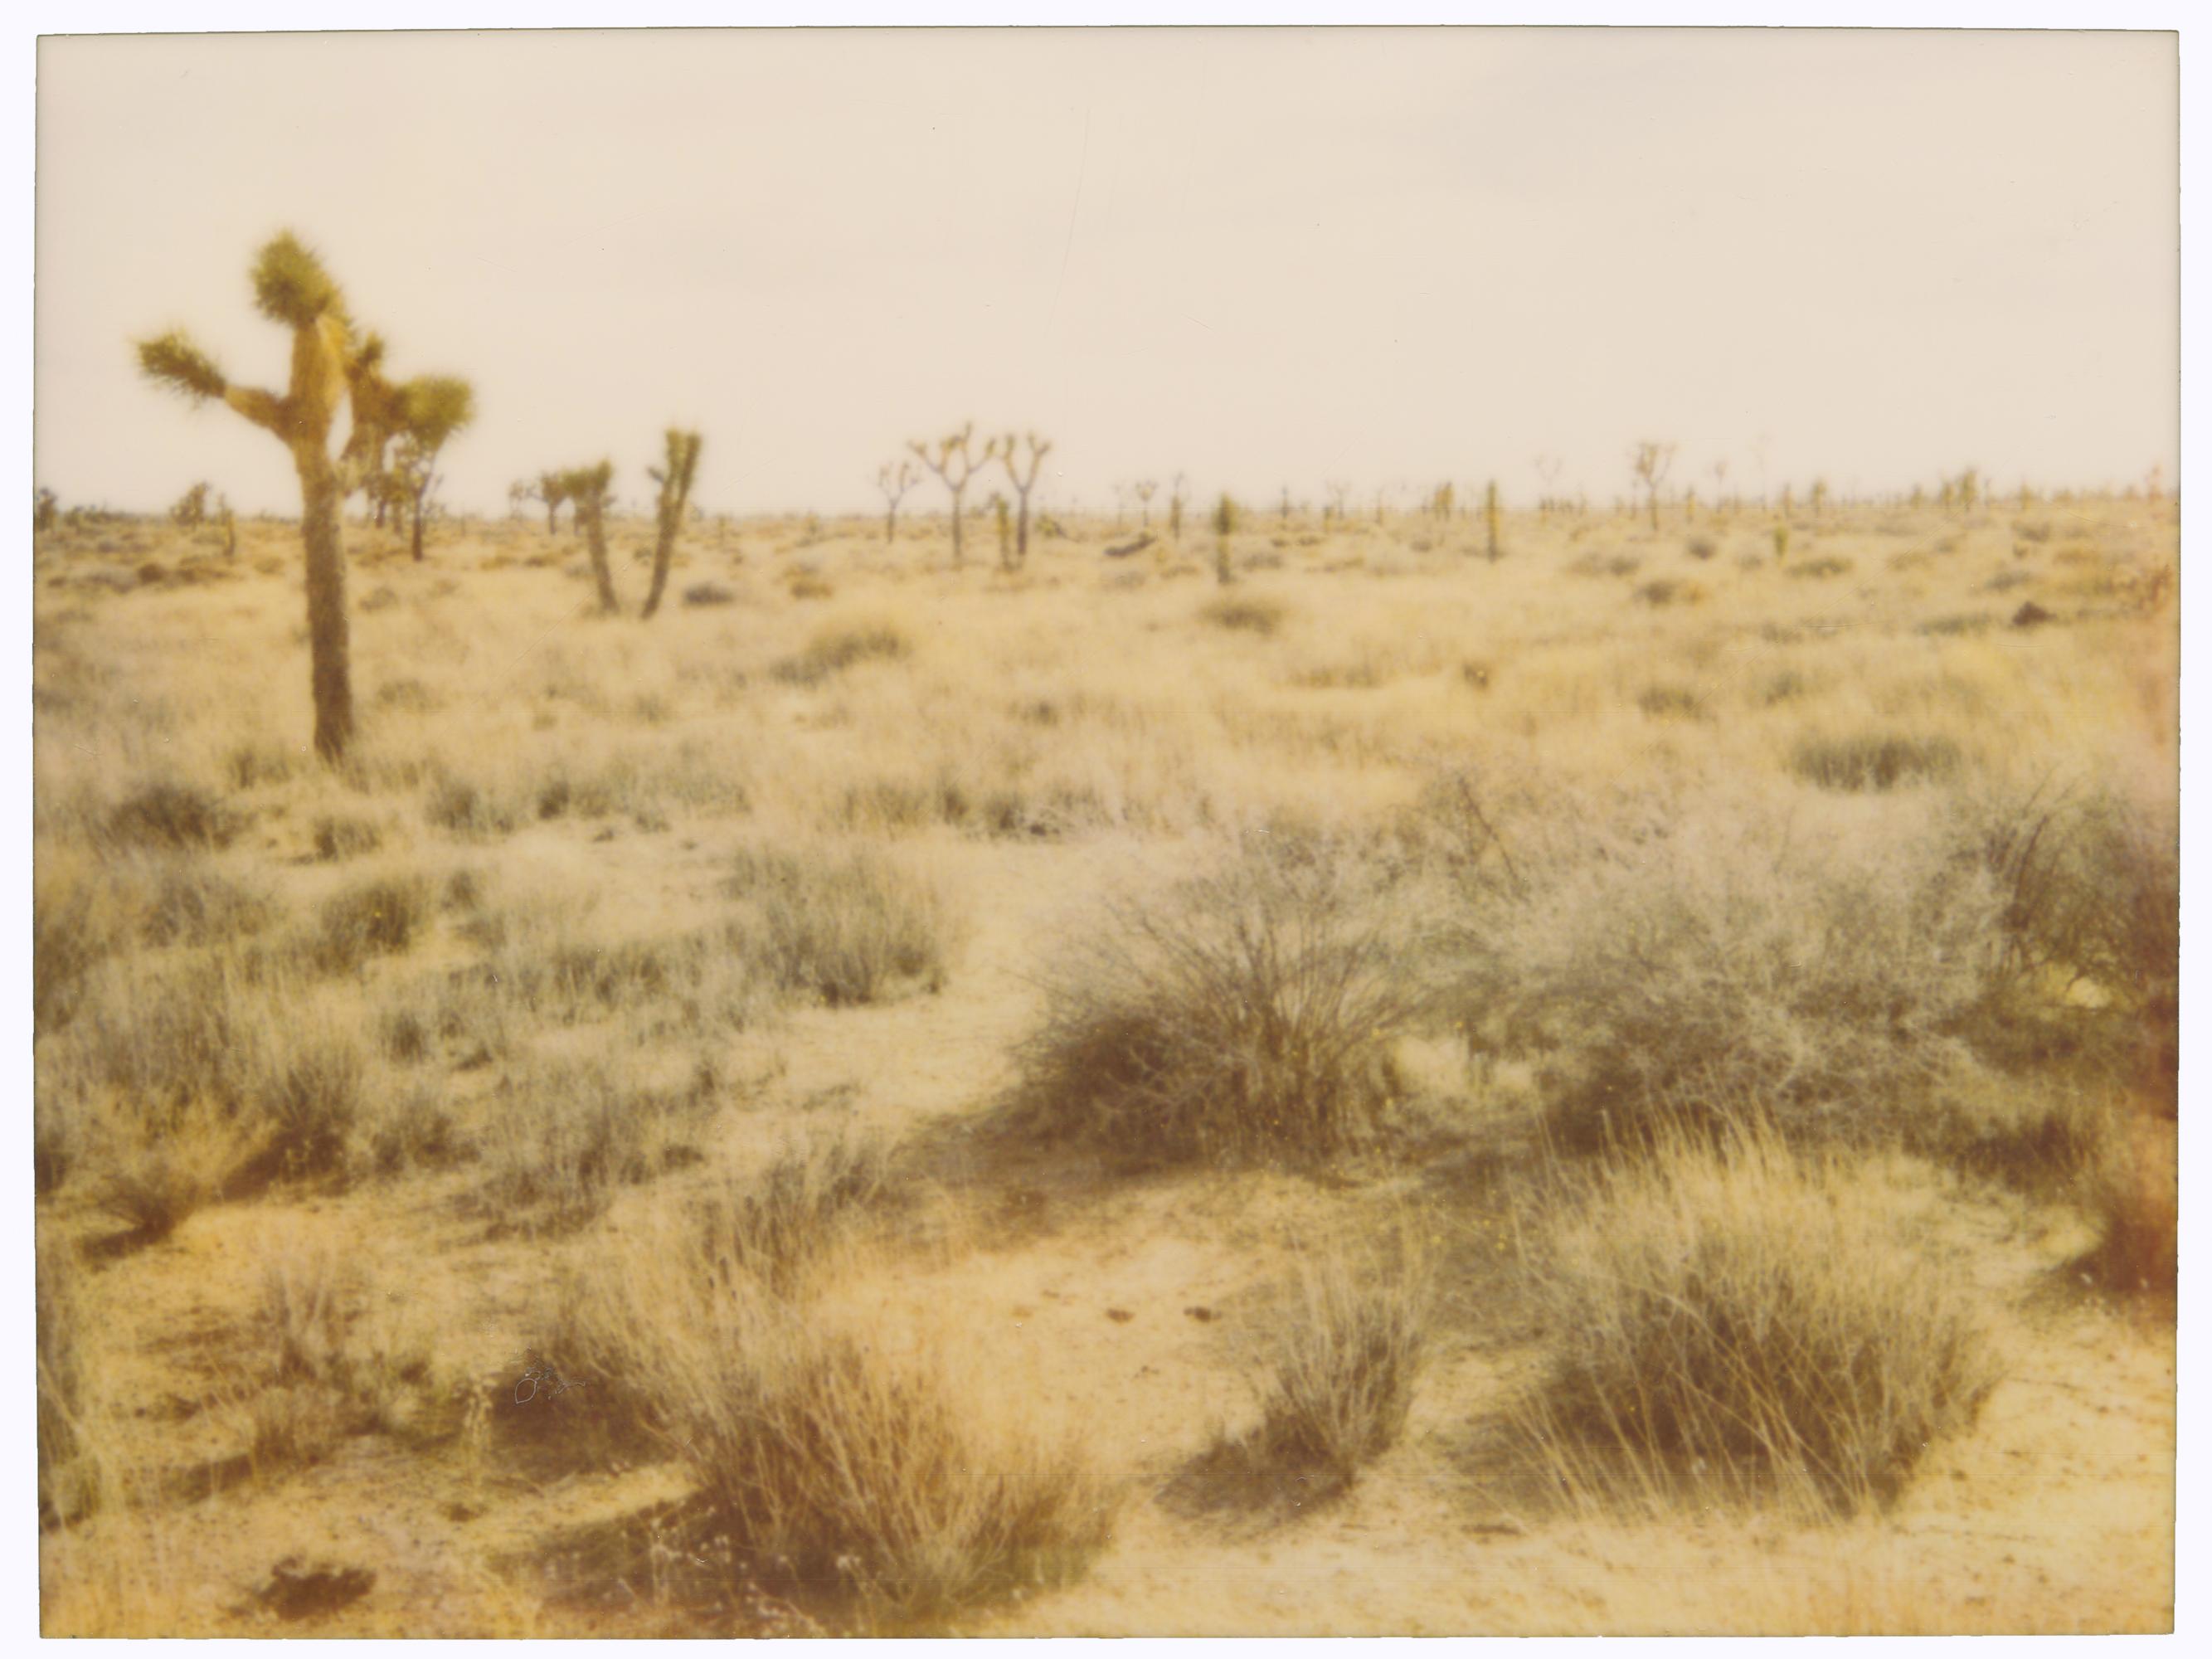 Stefanie Schneider Color Photograph – Joshua Tree National Park (29 Palms, CA) – analog